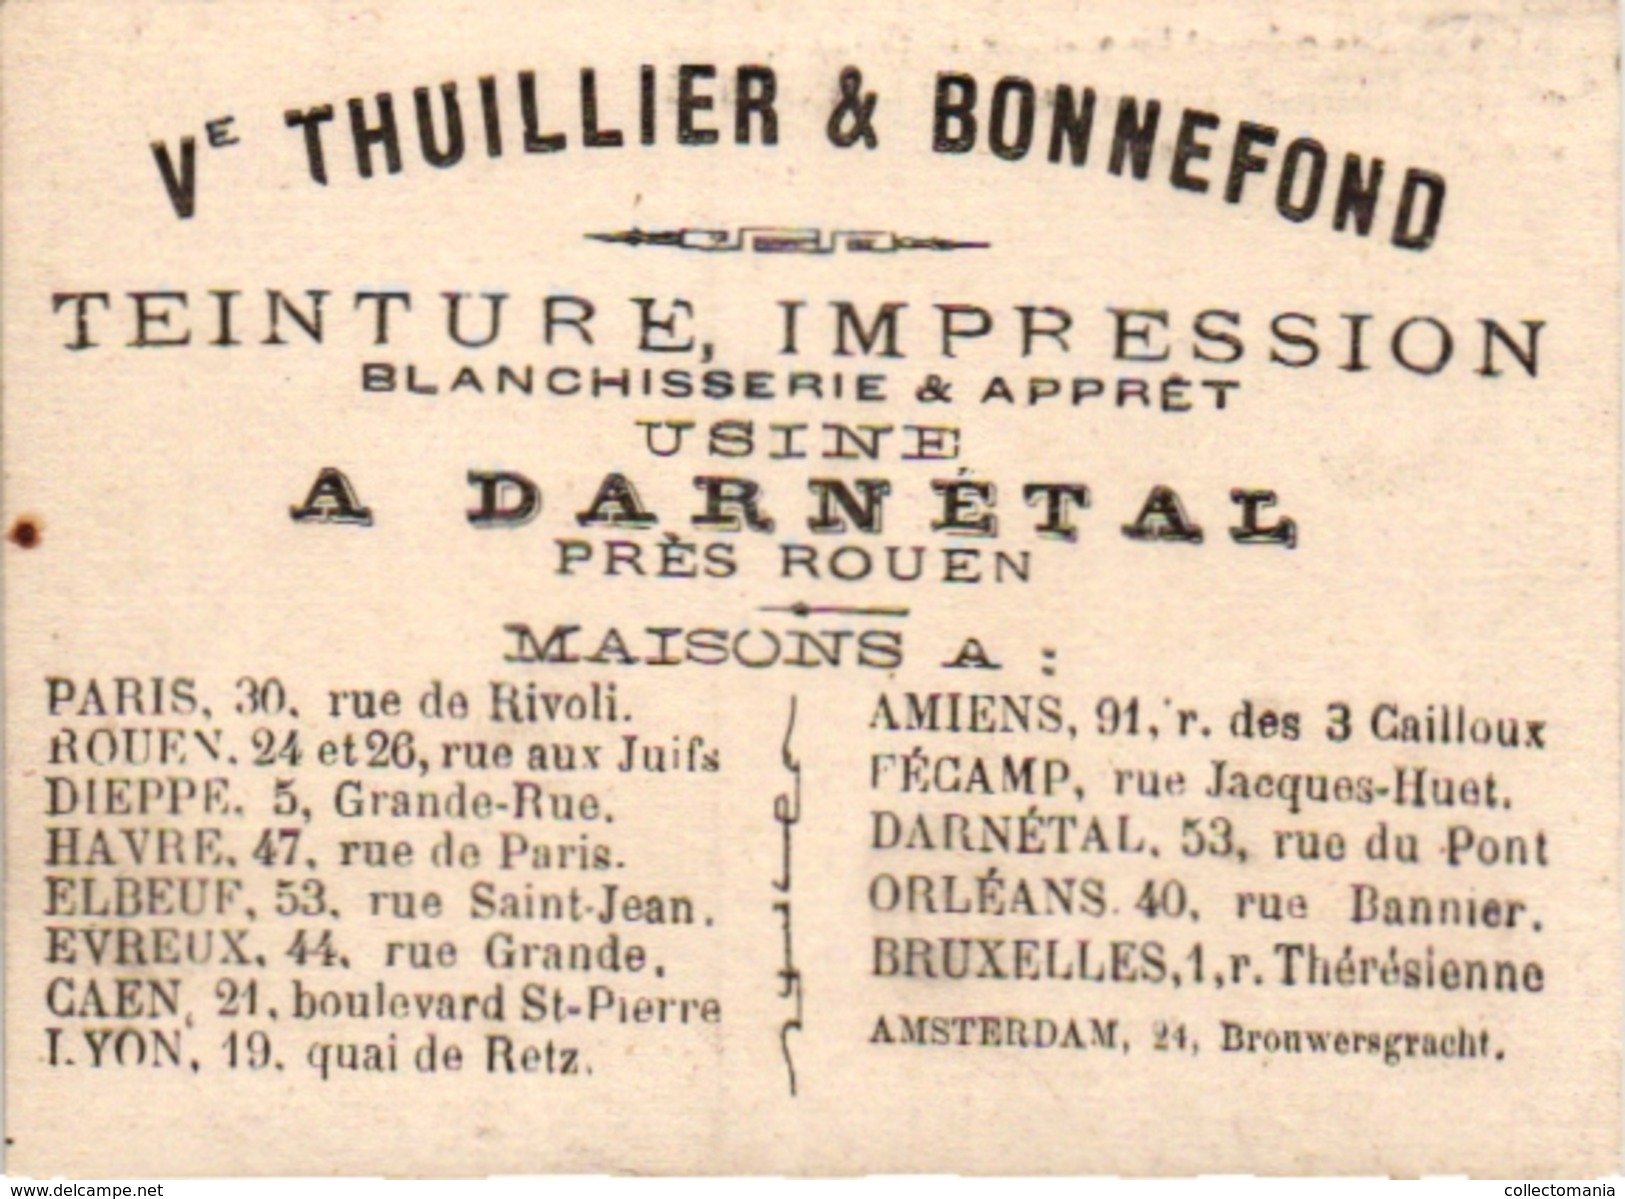 7 Cards Jeu de dames   Checkers  Dame   PUB Montais Fontenay le Comte Sodex Thuillier De Beuckelaer Antwerpen